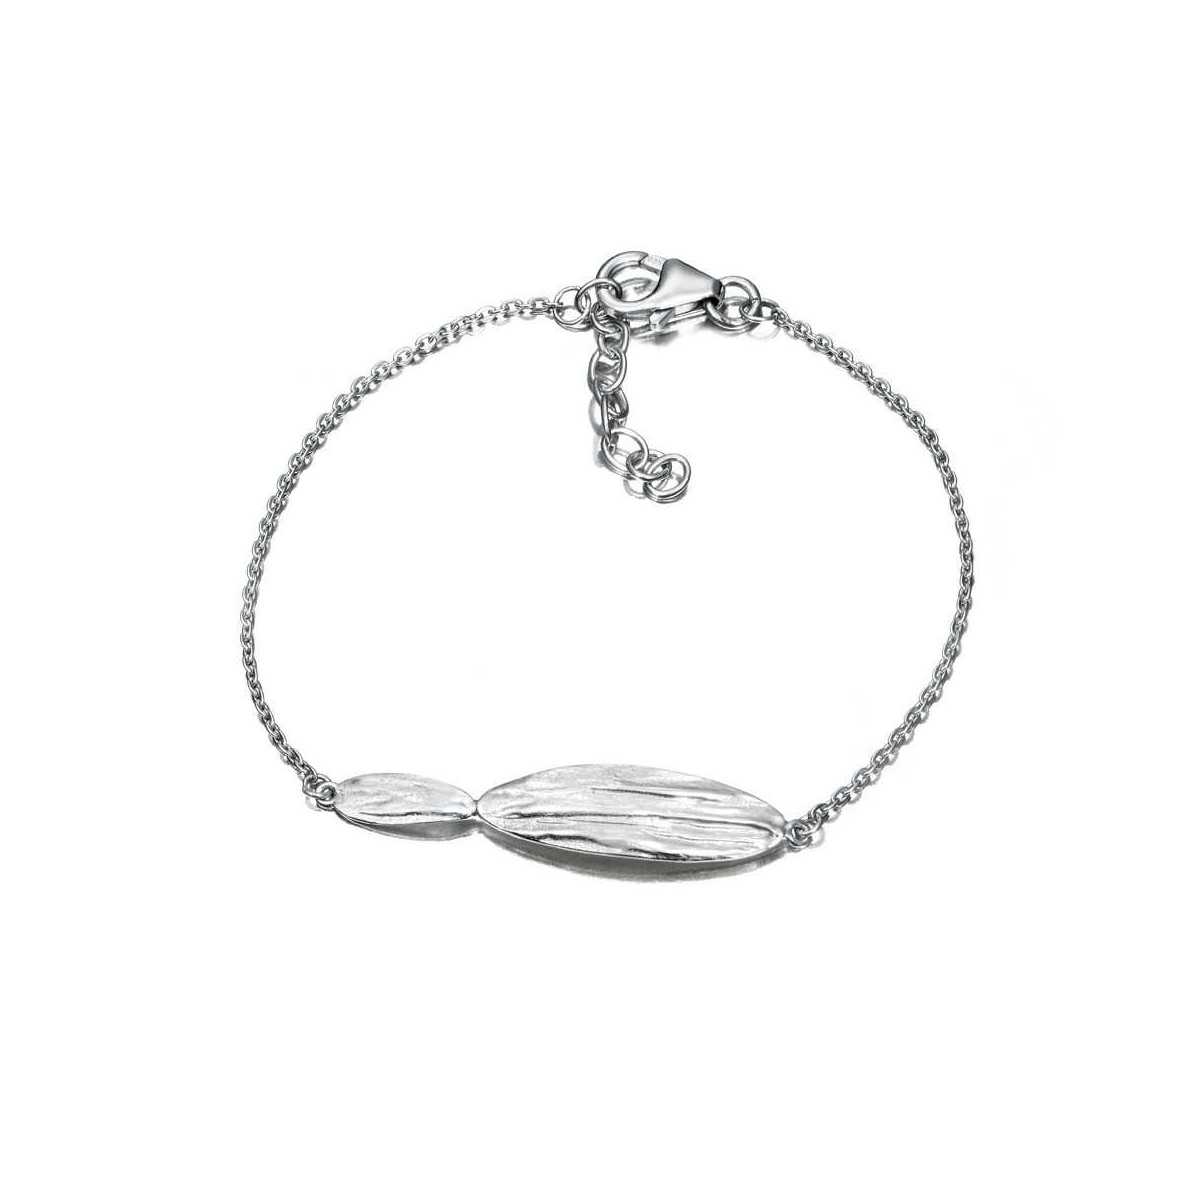 ARIZONA Bracelet in Silver.